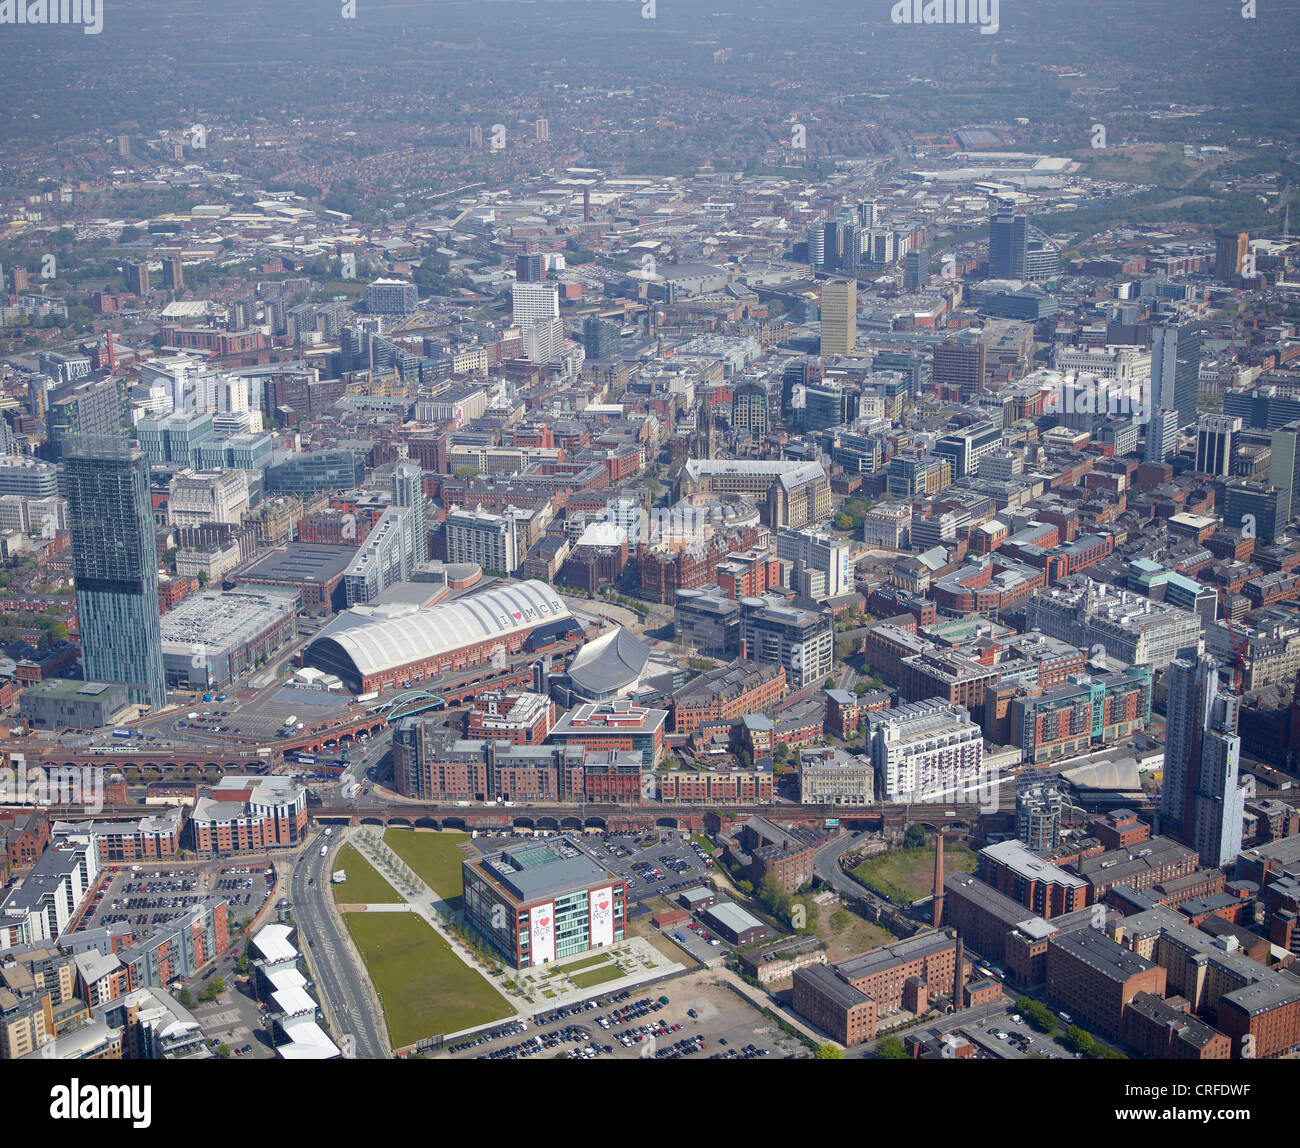 Centre de Manchester, à partir de l'air, au nord ouest de l'Angleterre, Beetham Tower et l'échange dans l'avant-plan Banque D'Images